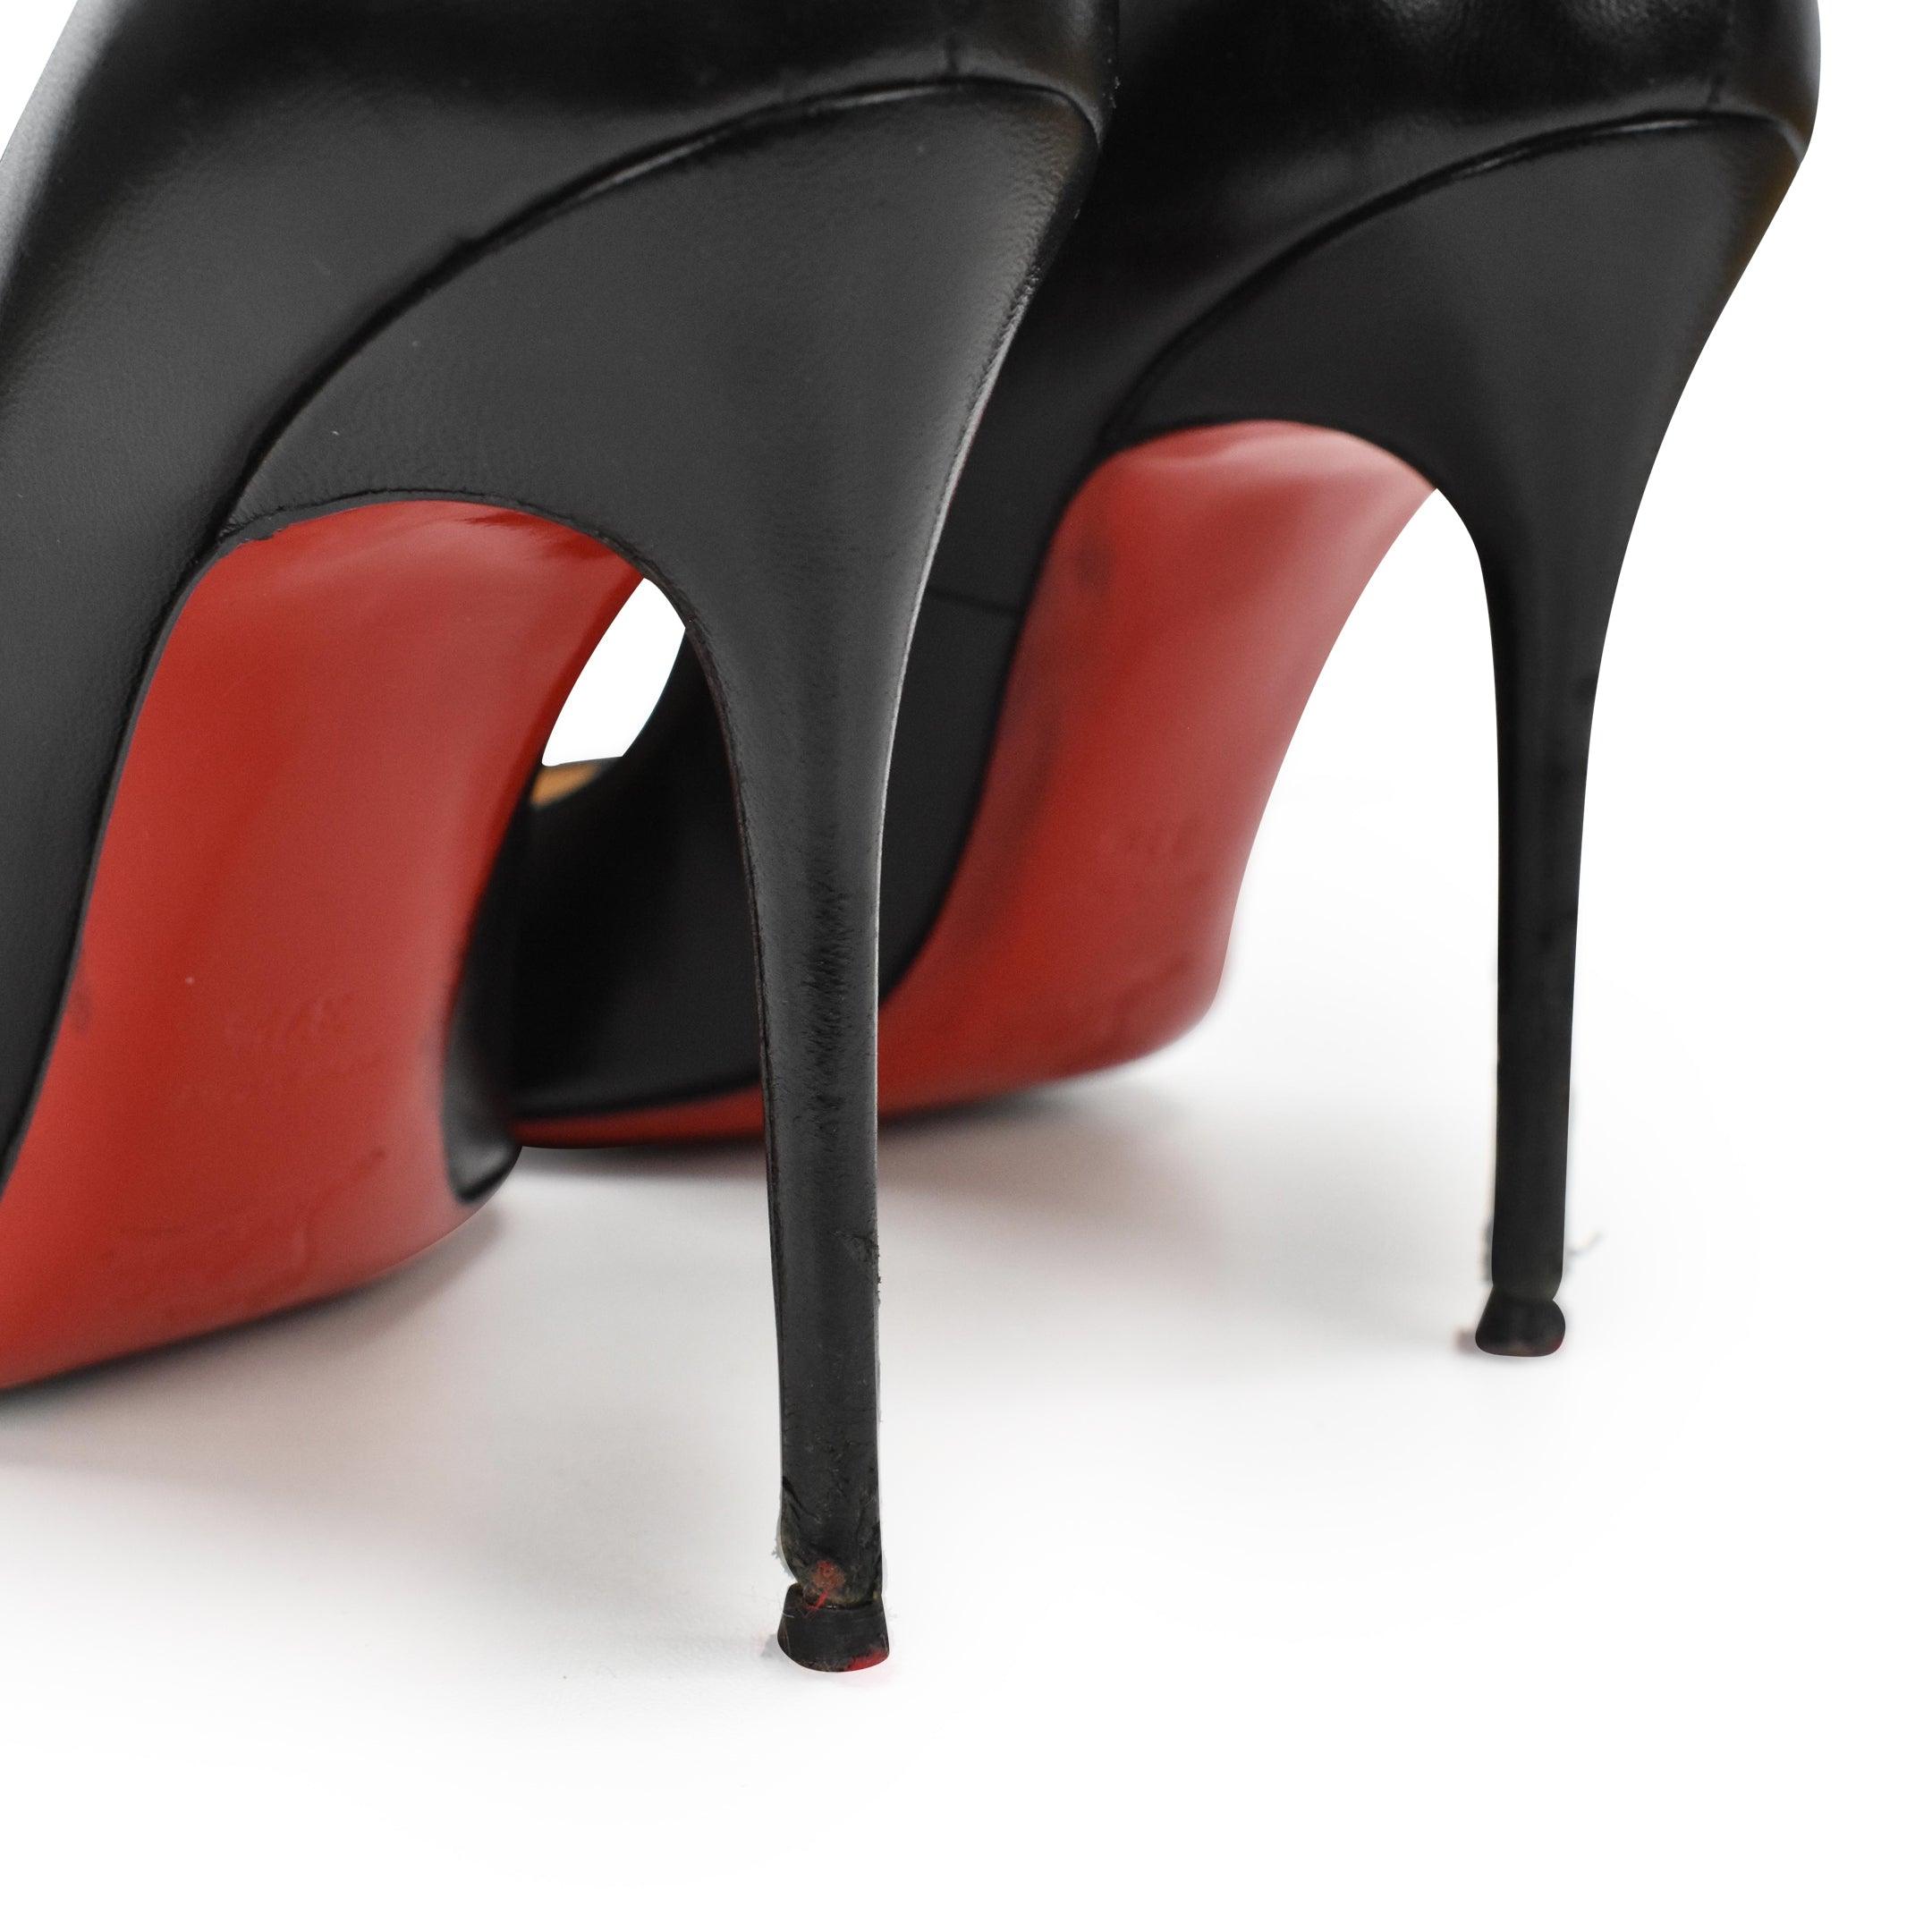 Christian Louboutin Heels - Women's 37.5 - Fashionably Yours